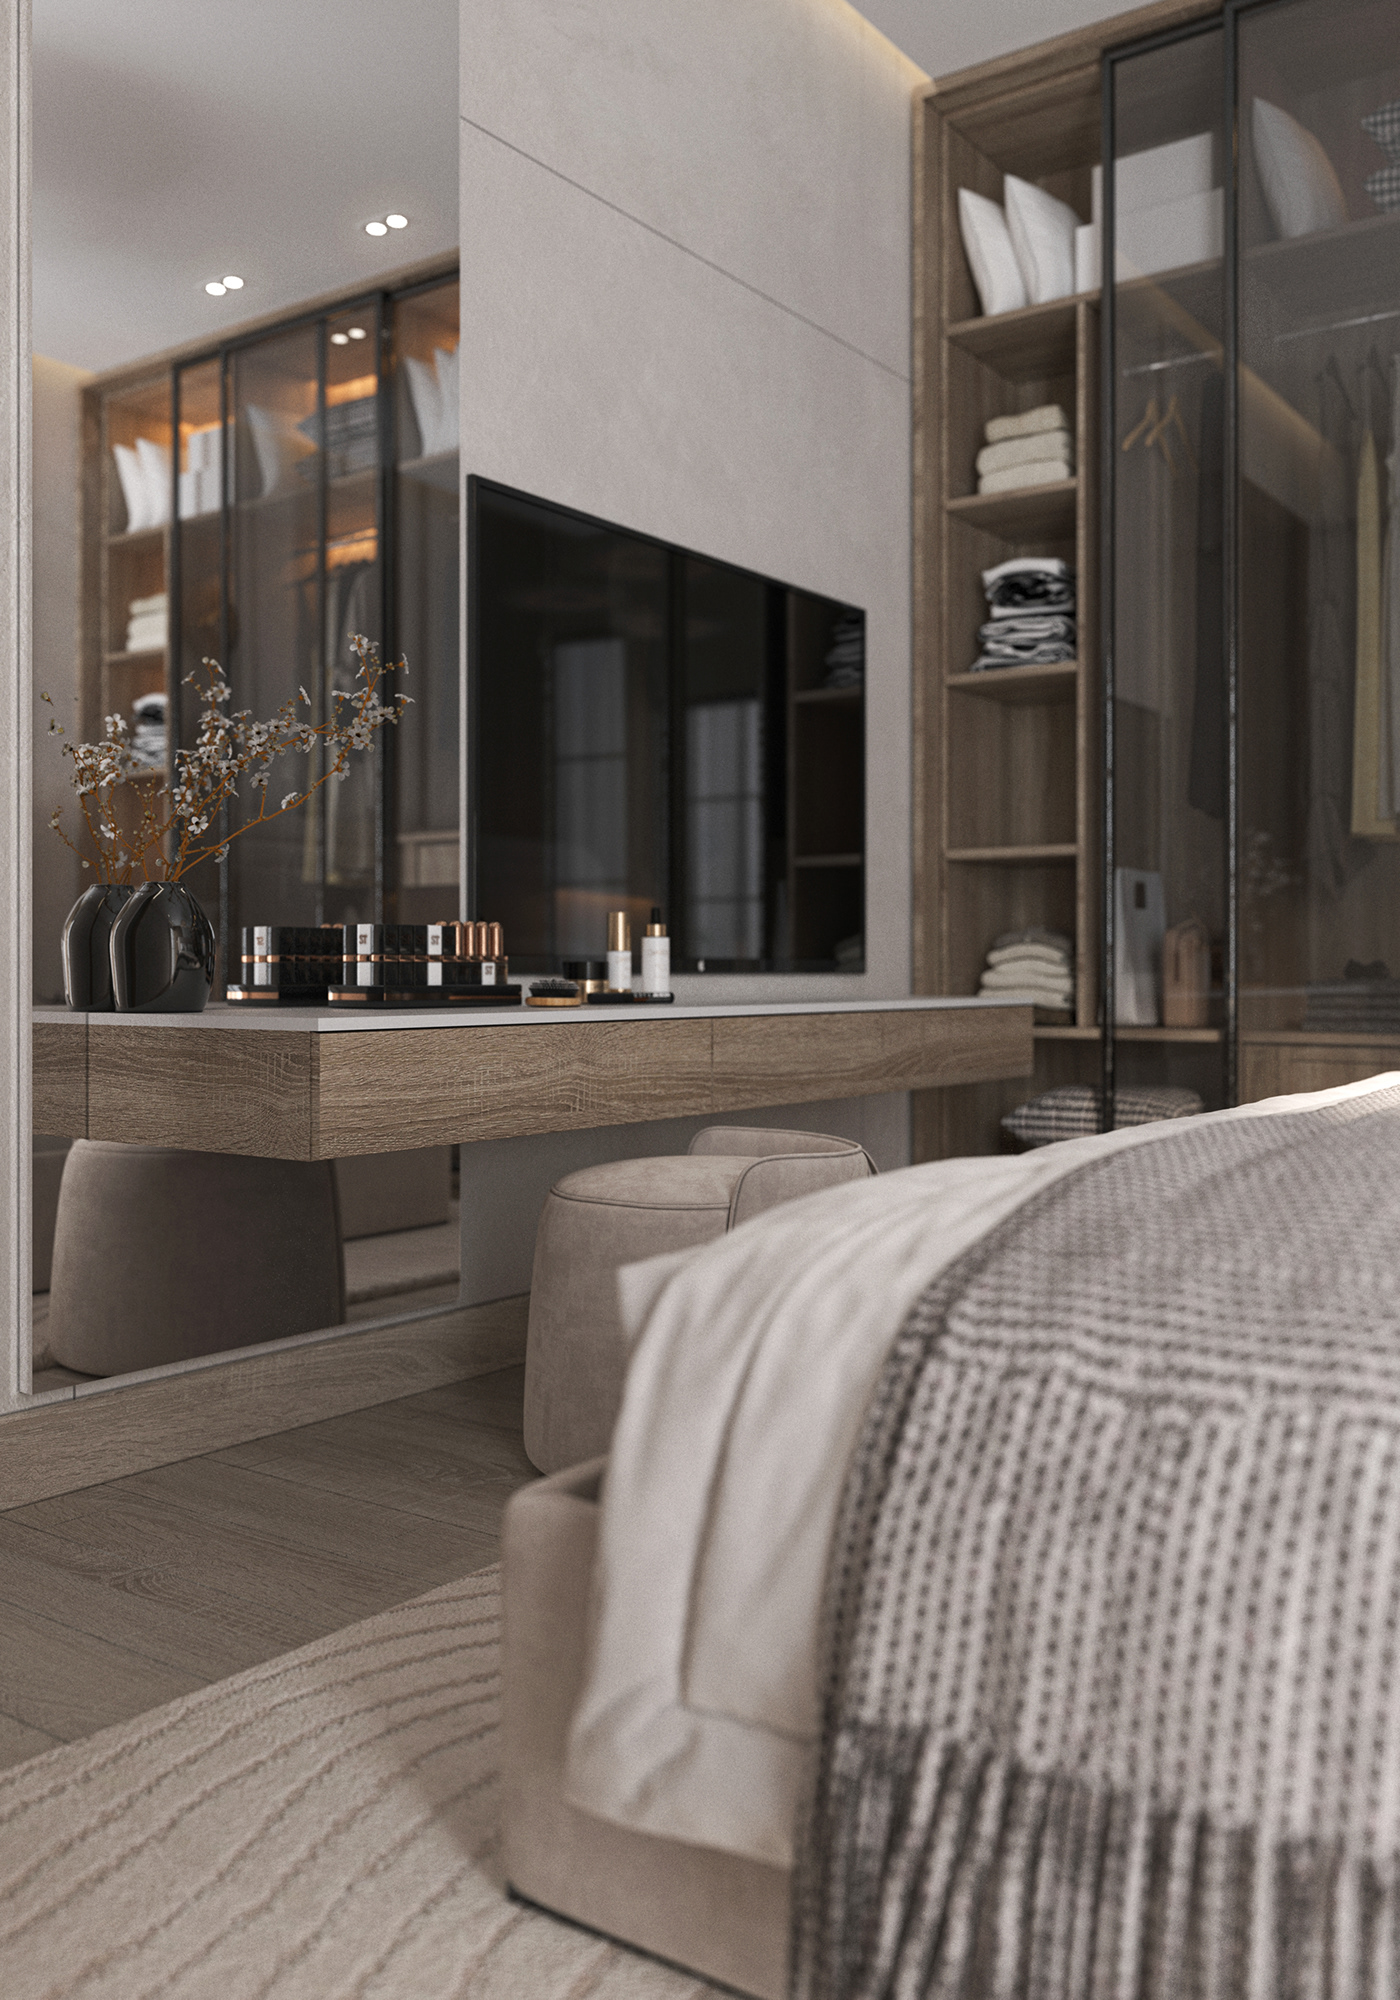 bedroom modernbedroom bedroom design master bedroom simple design minimal minimalist Scandinavia daylight minimalbedroom